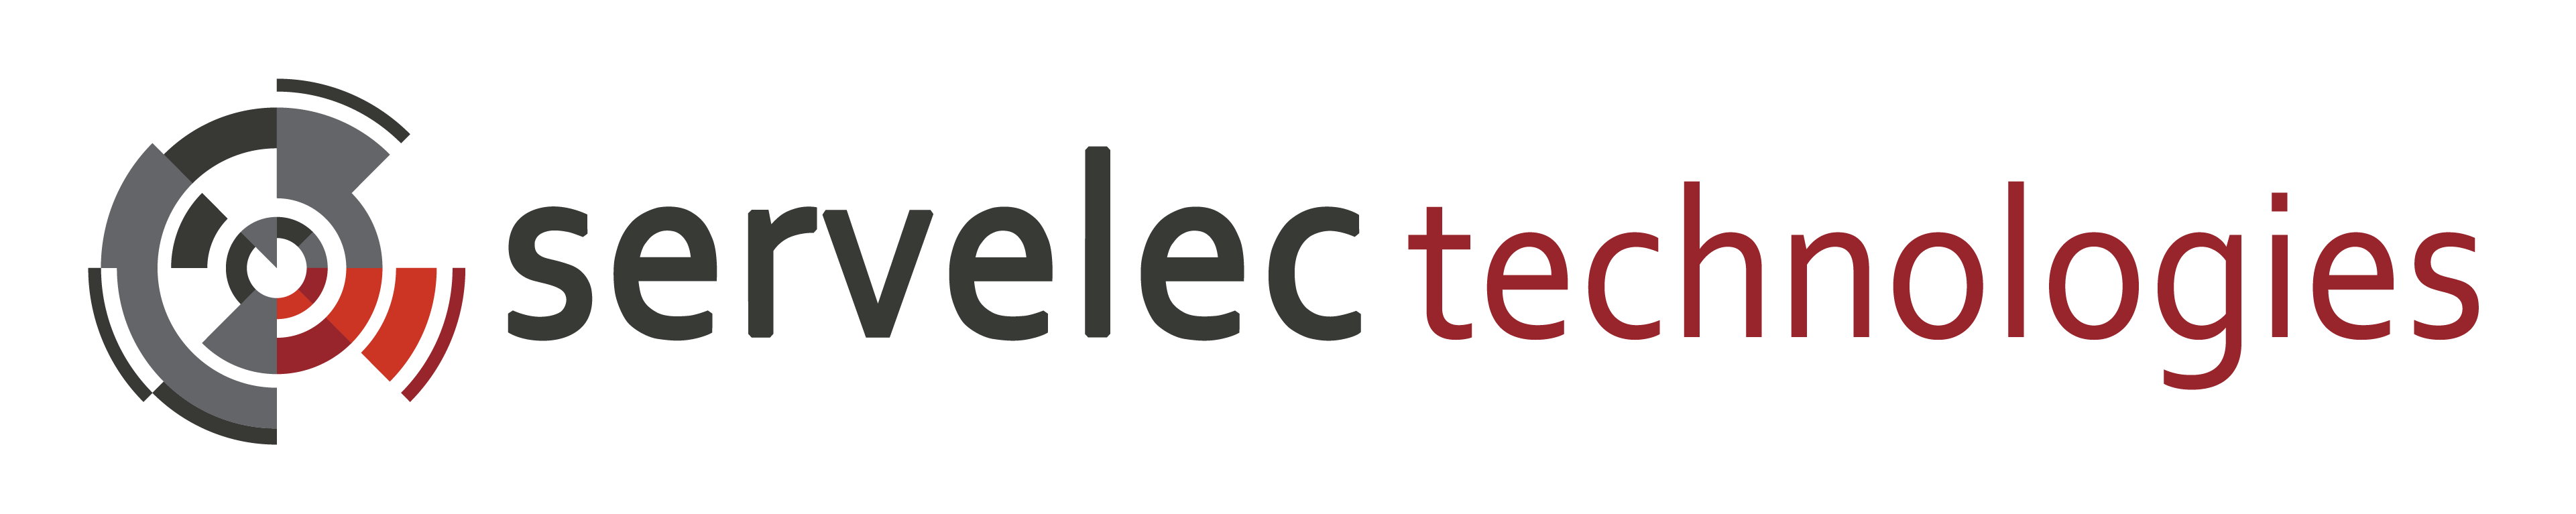 servelec_primary_logo_technologies